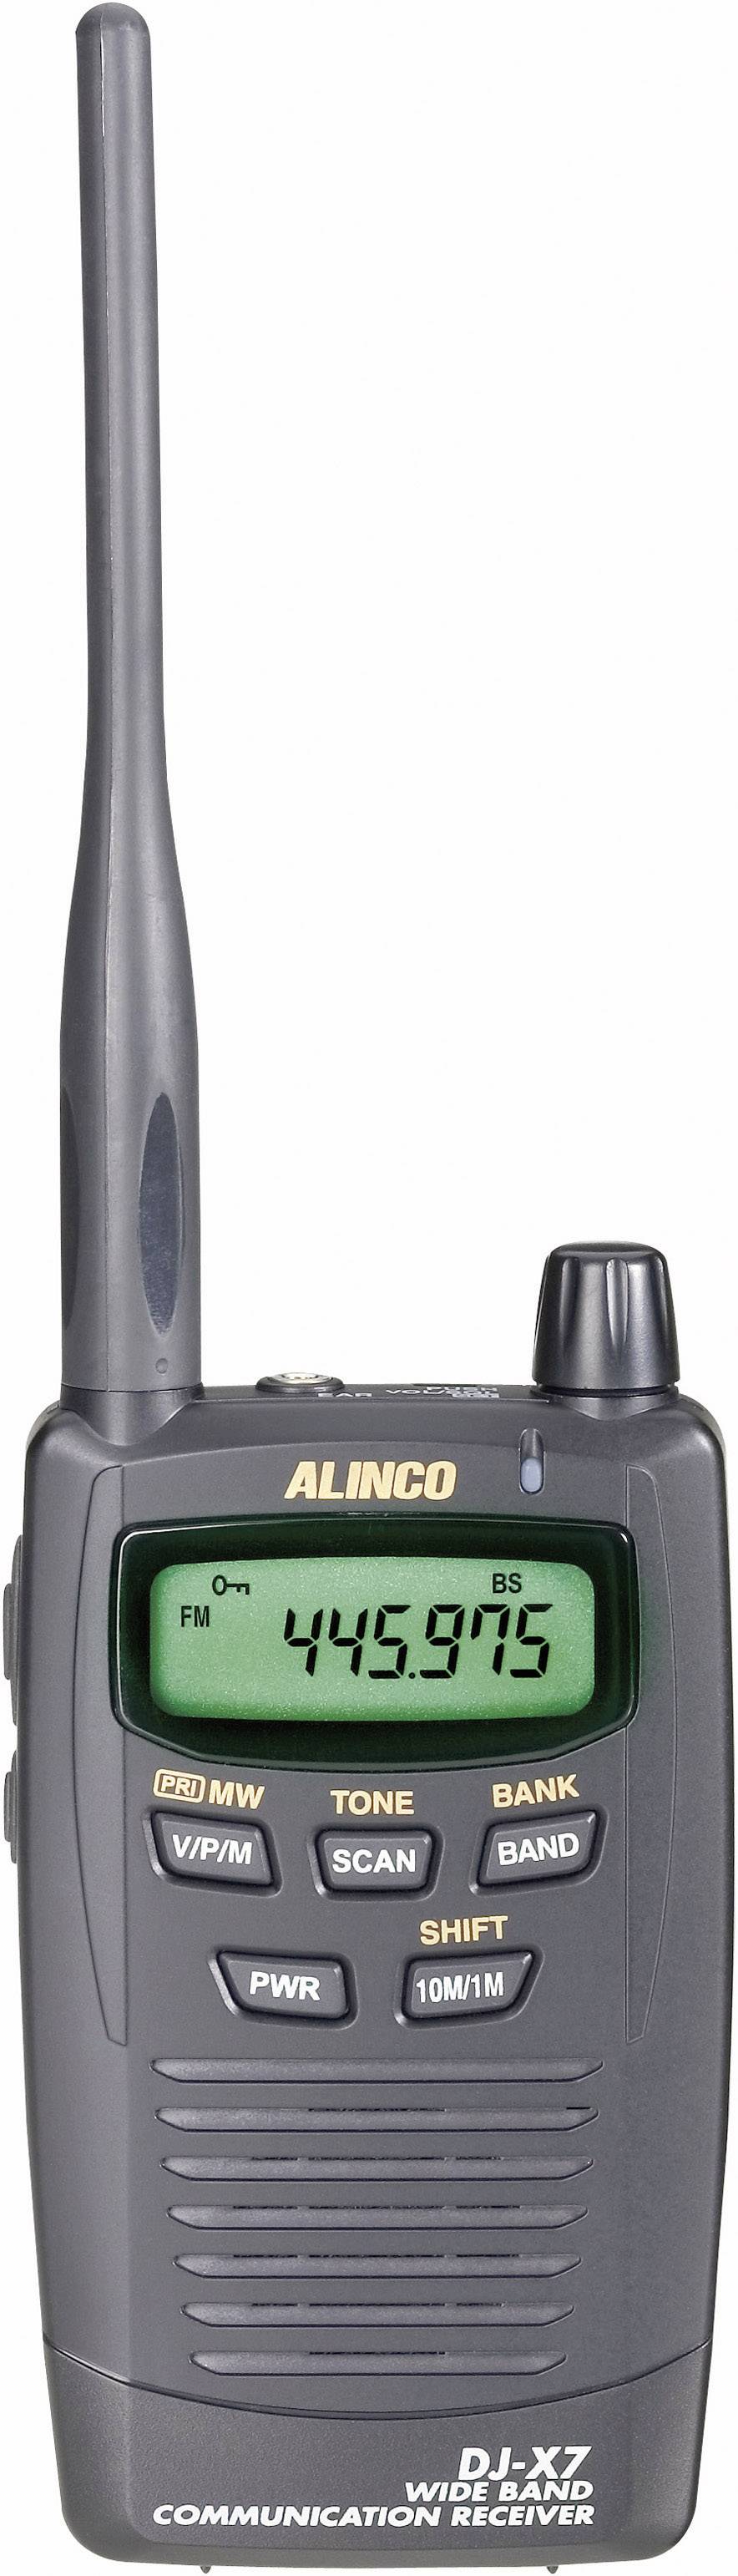 Alinco DJ-X11 Escáner de mano 0.05-1300MHz